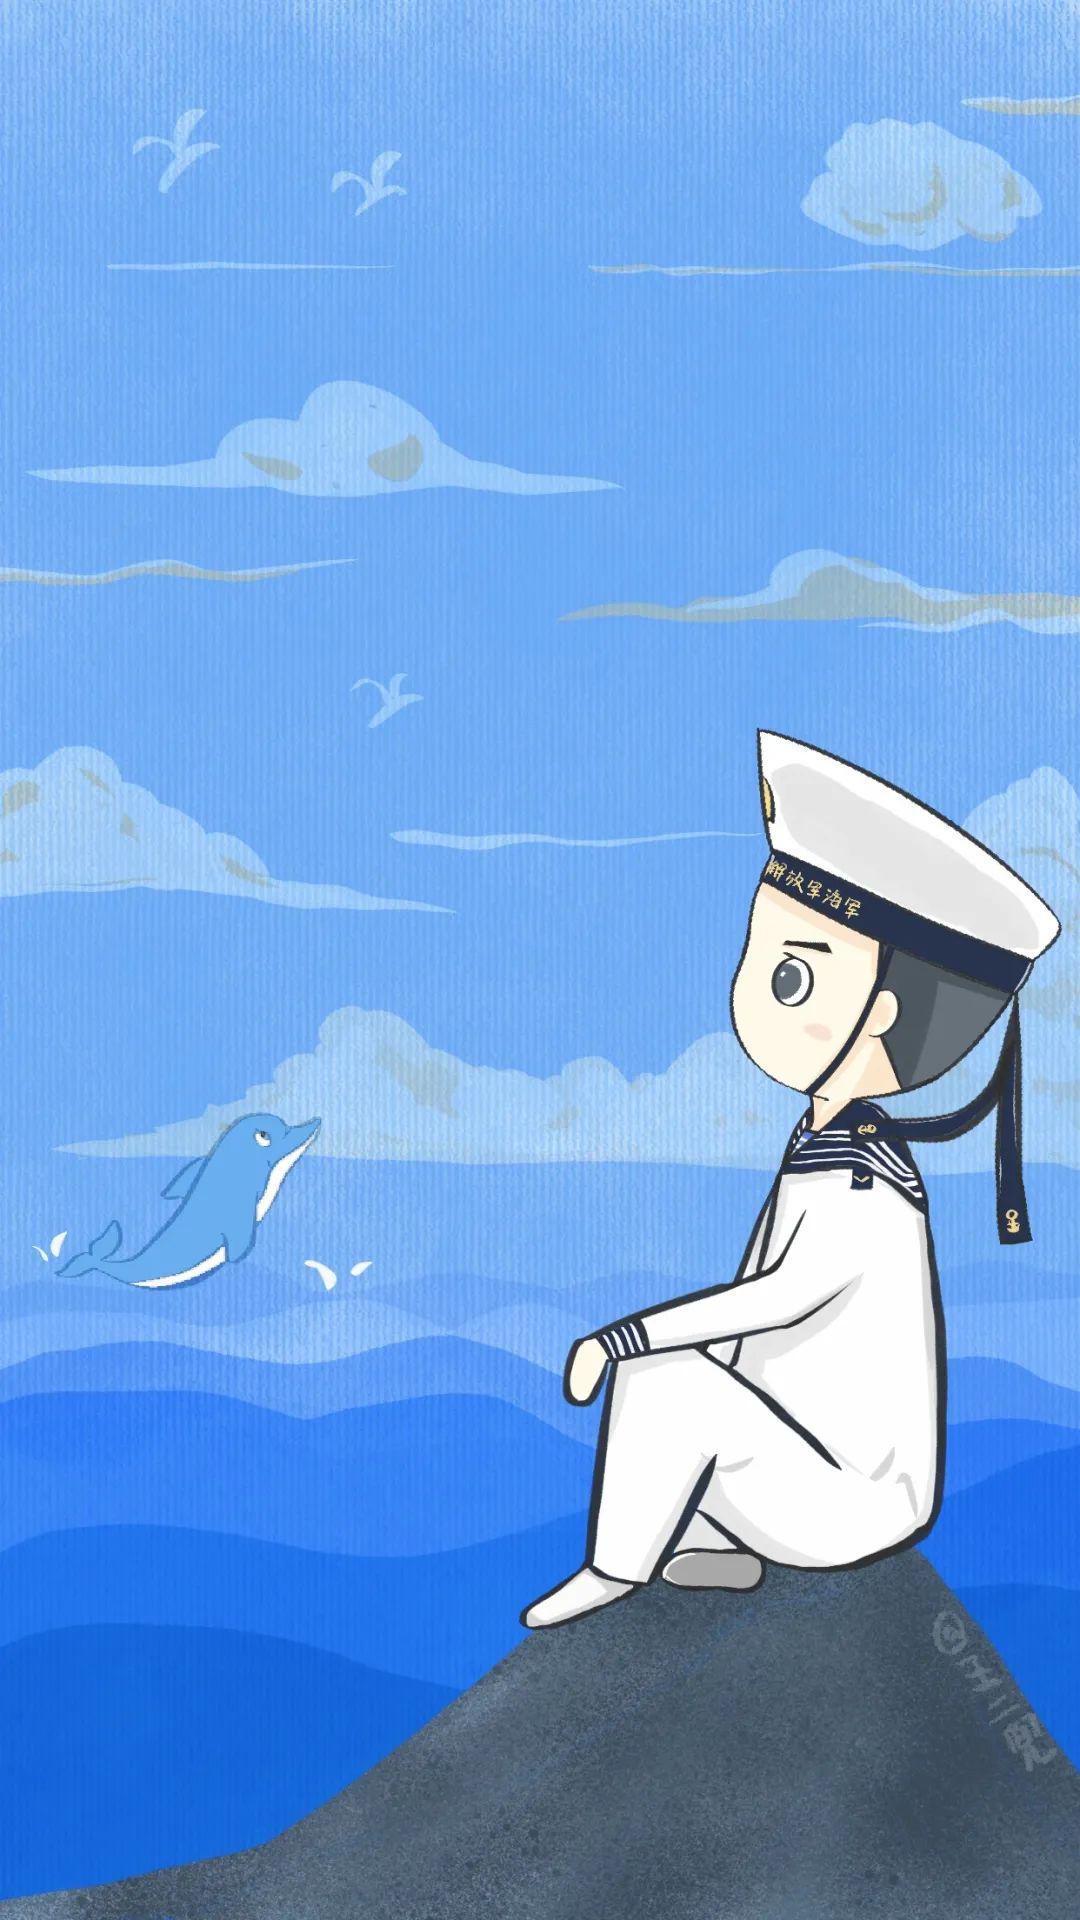 海军节双航母超燃视频超酷壁纸承包你的手机